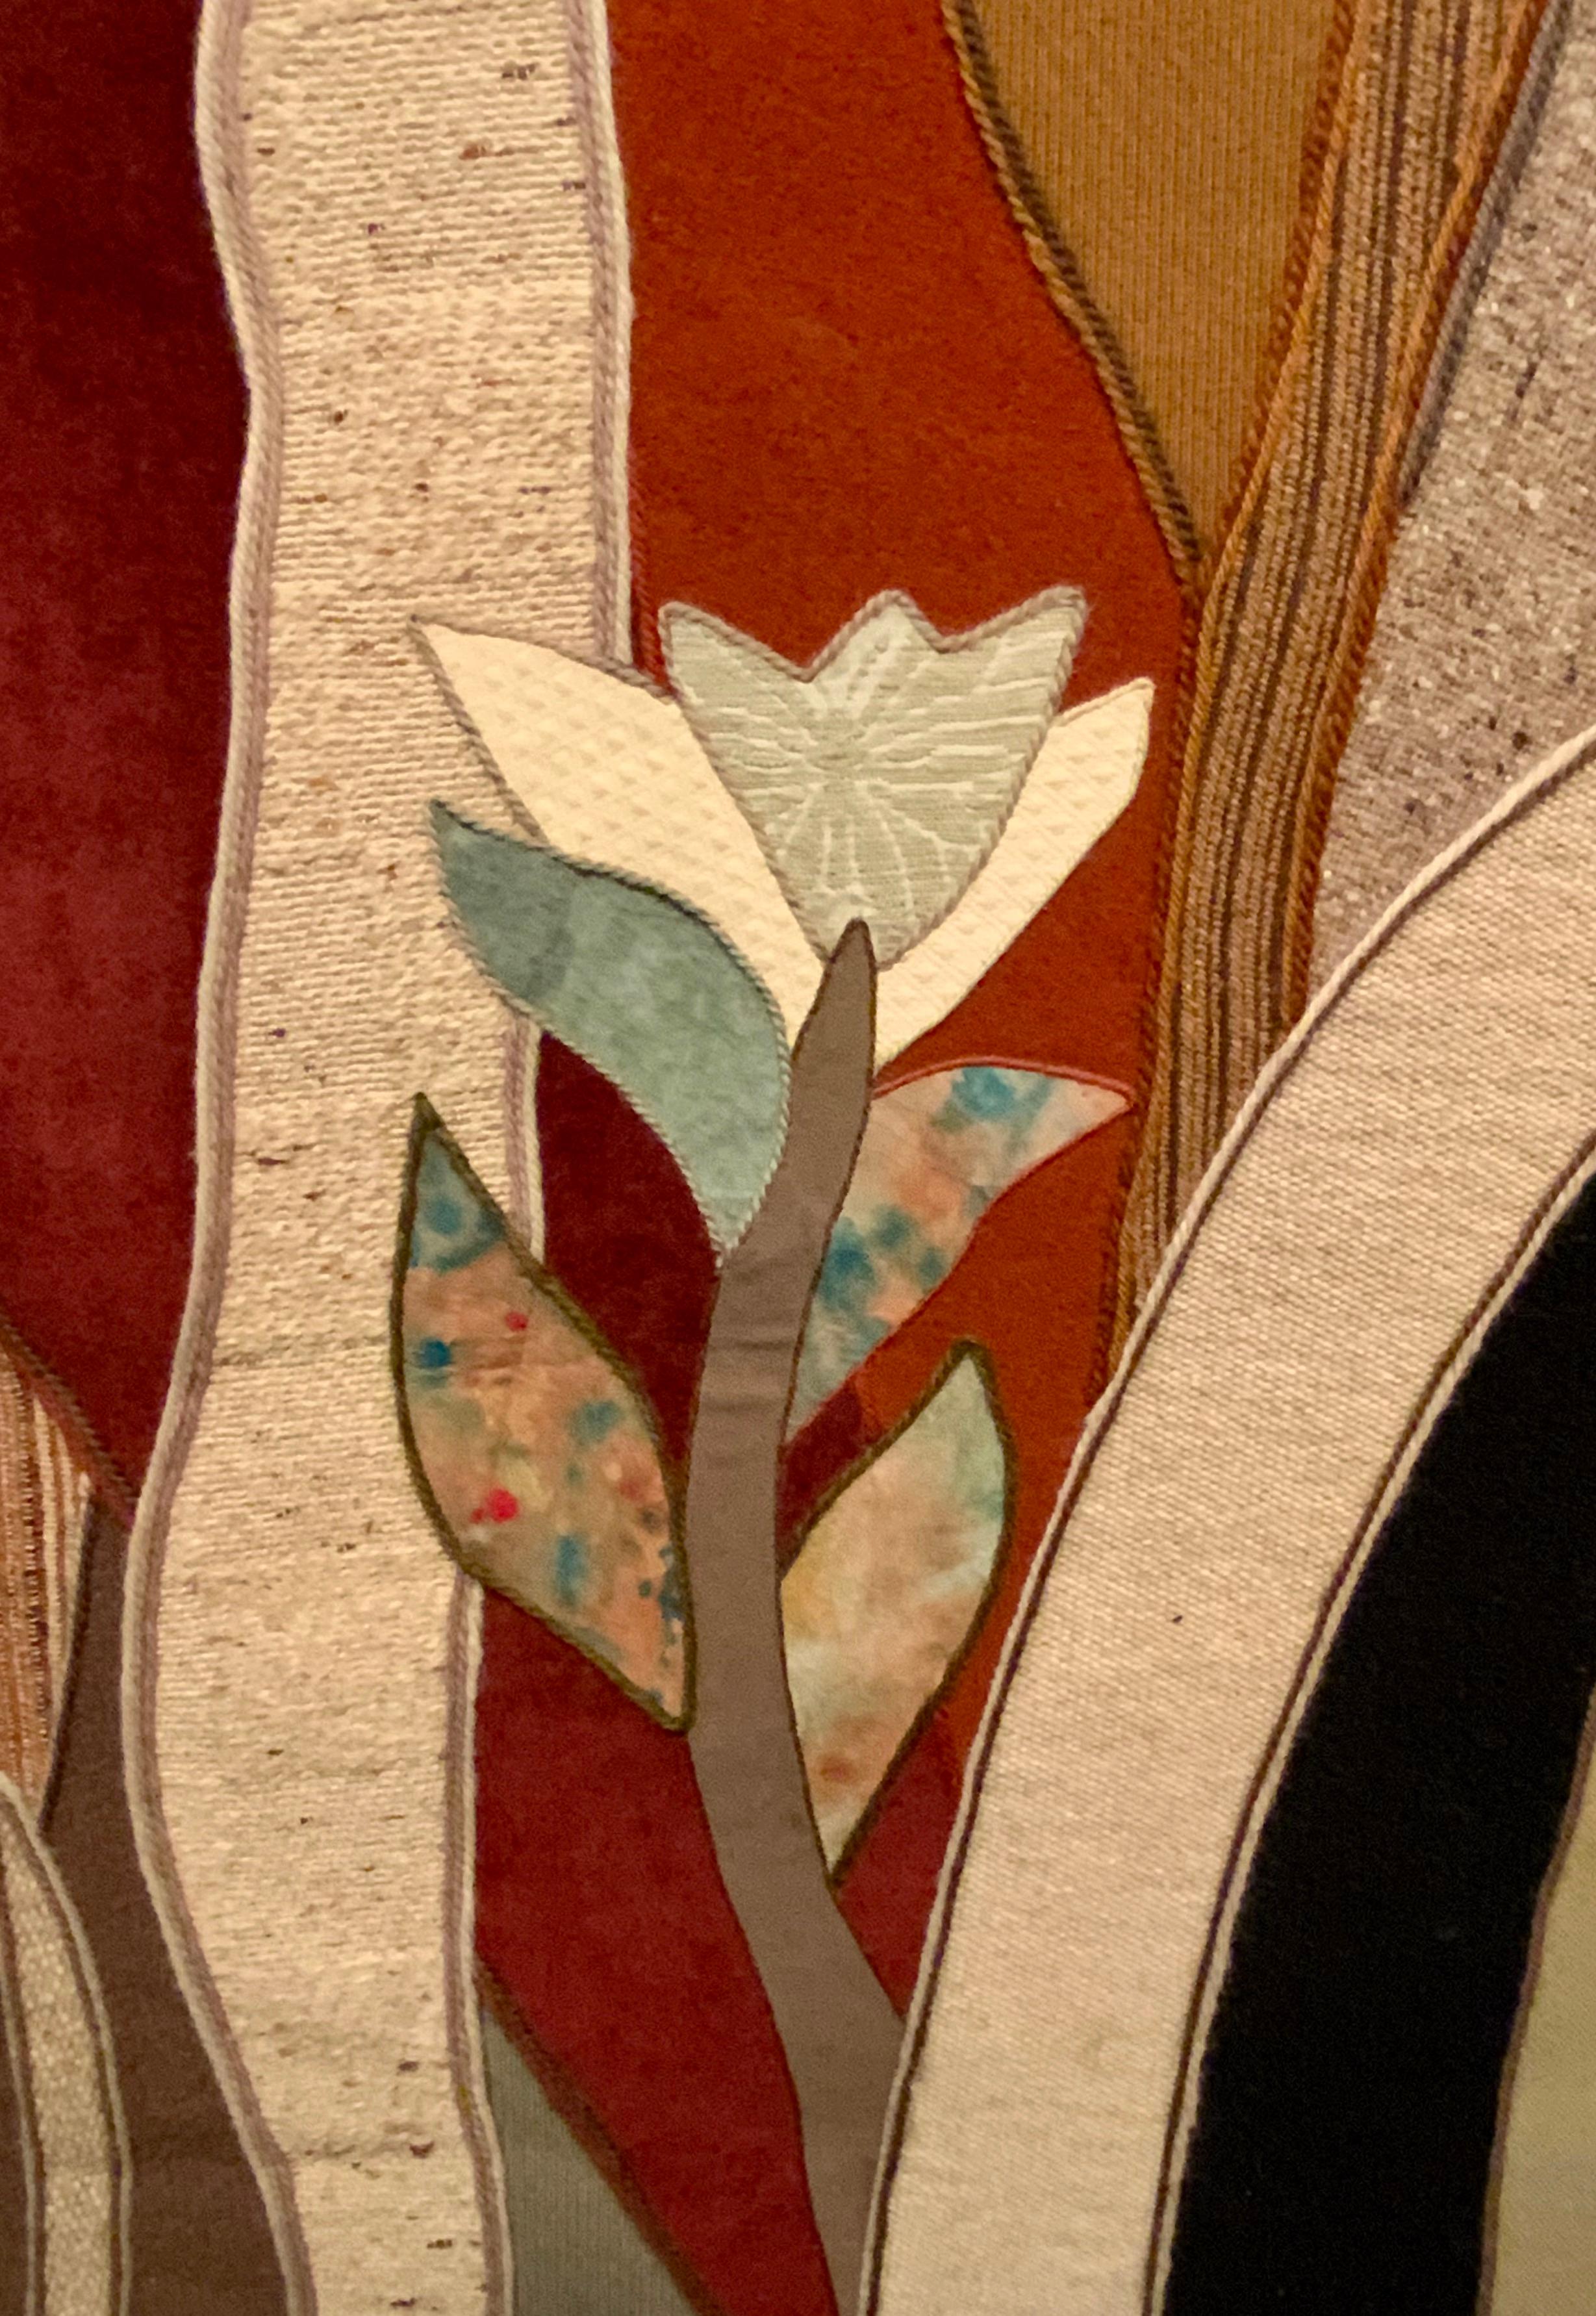 Einzigartiger, individueller Wandteppich, entworfen und  handgefertigt von der kalifornischen Meistertapisseriekünstlerin Helen Webber (Amerikanerin 1928-2019). Der Künstler verwendet eine Collagetechnik, bei der er eine Reihe von